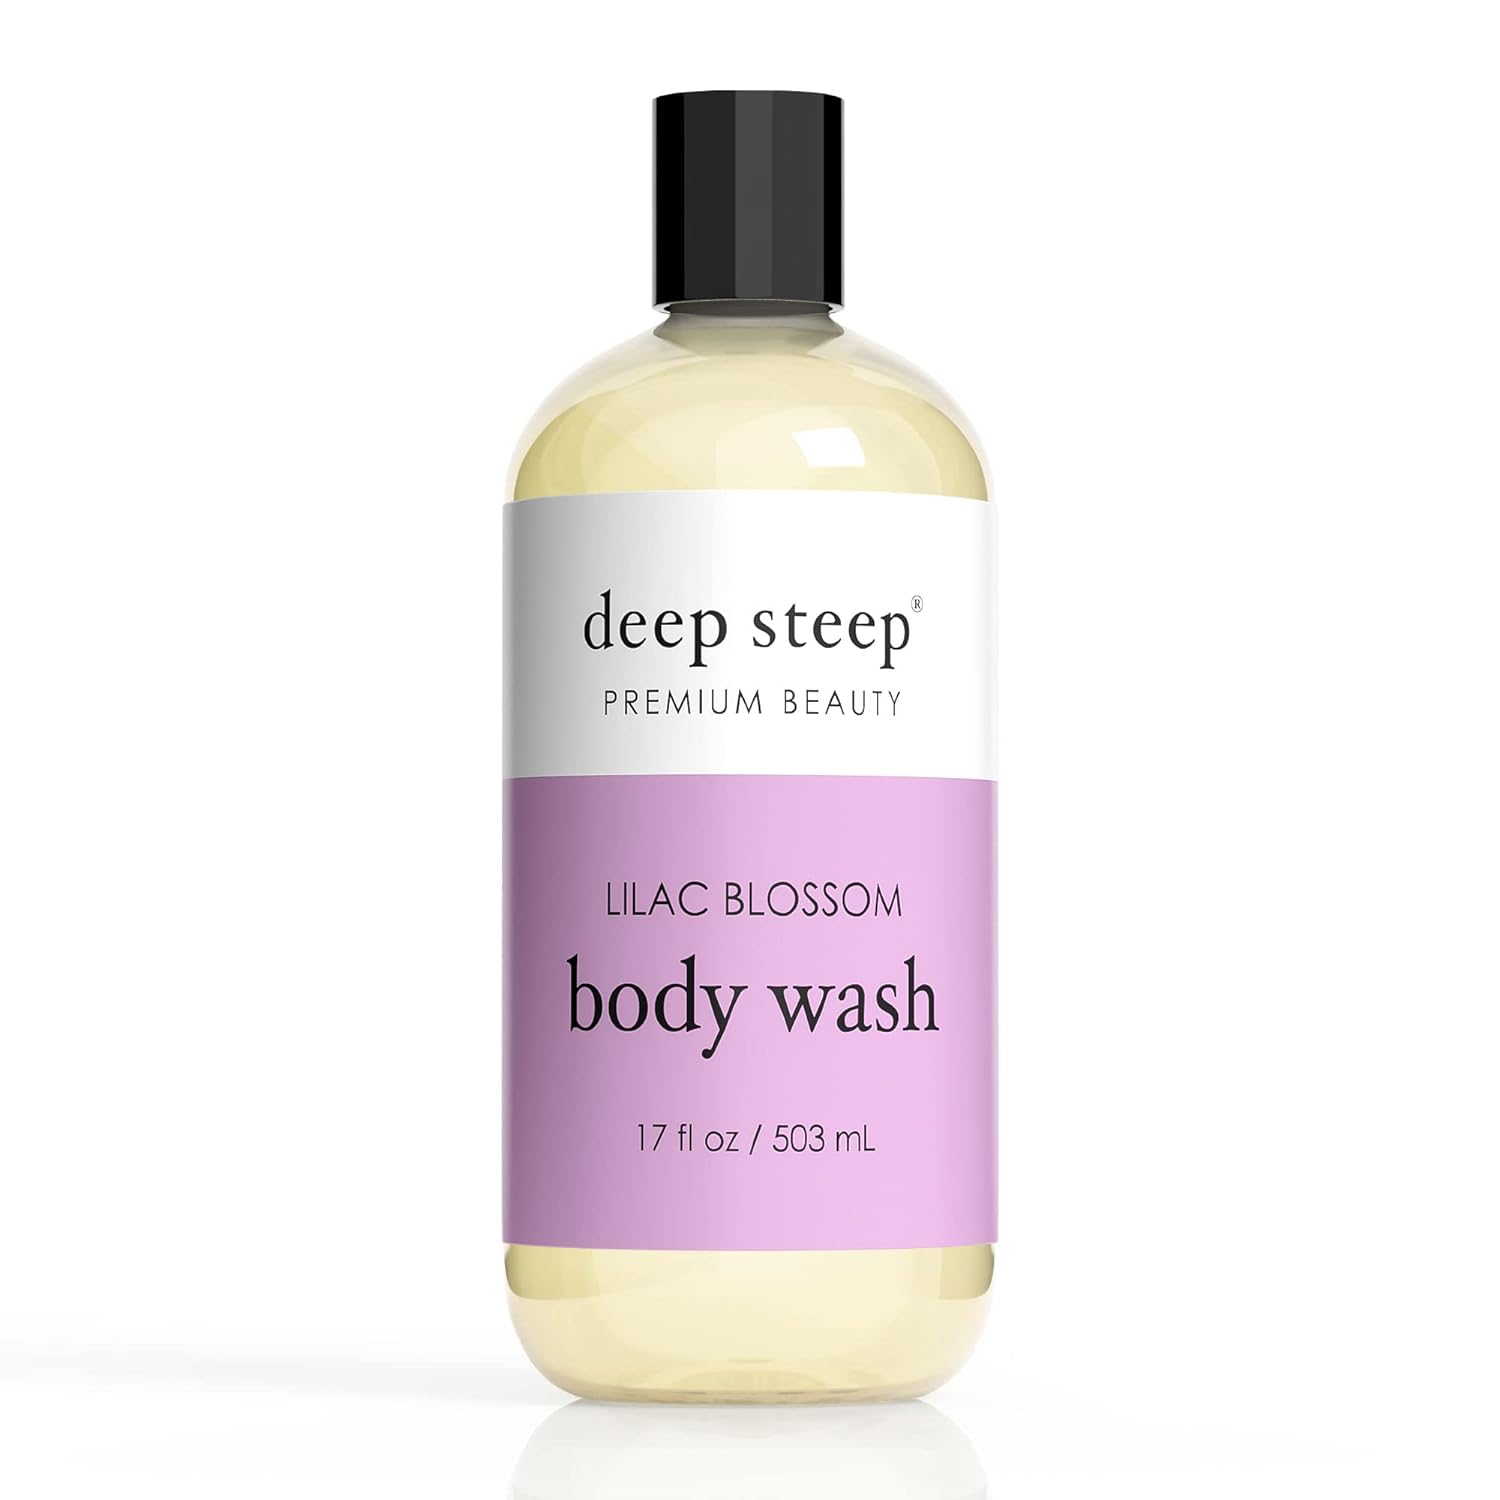 Deep Steep Argan Oil Body Wash, Lilac Blossom, 17